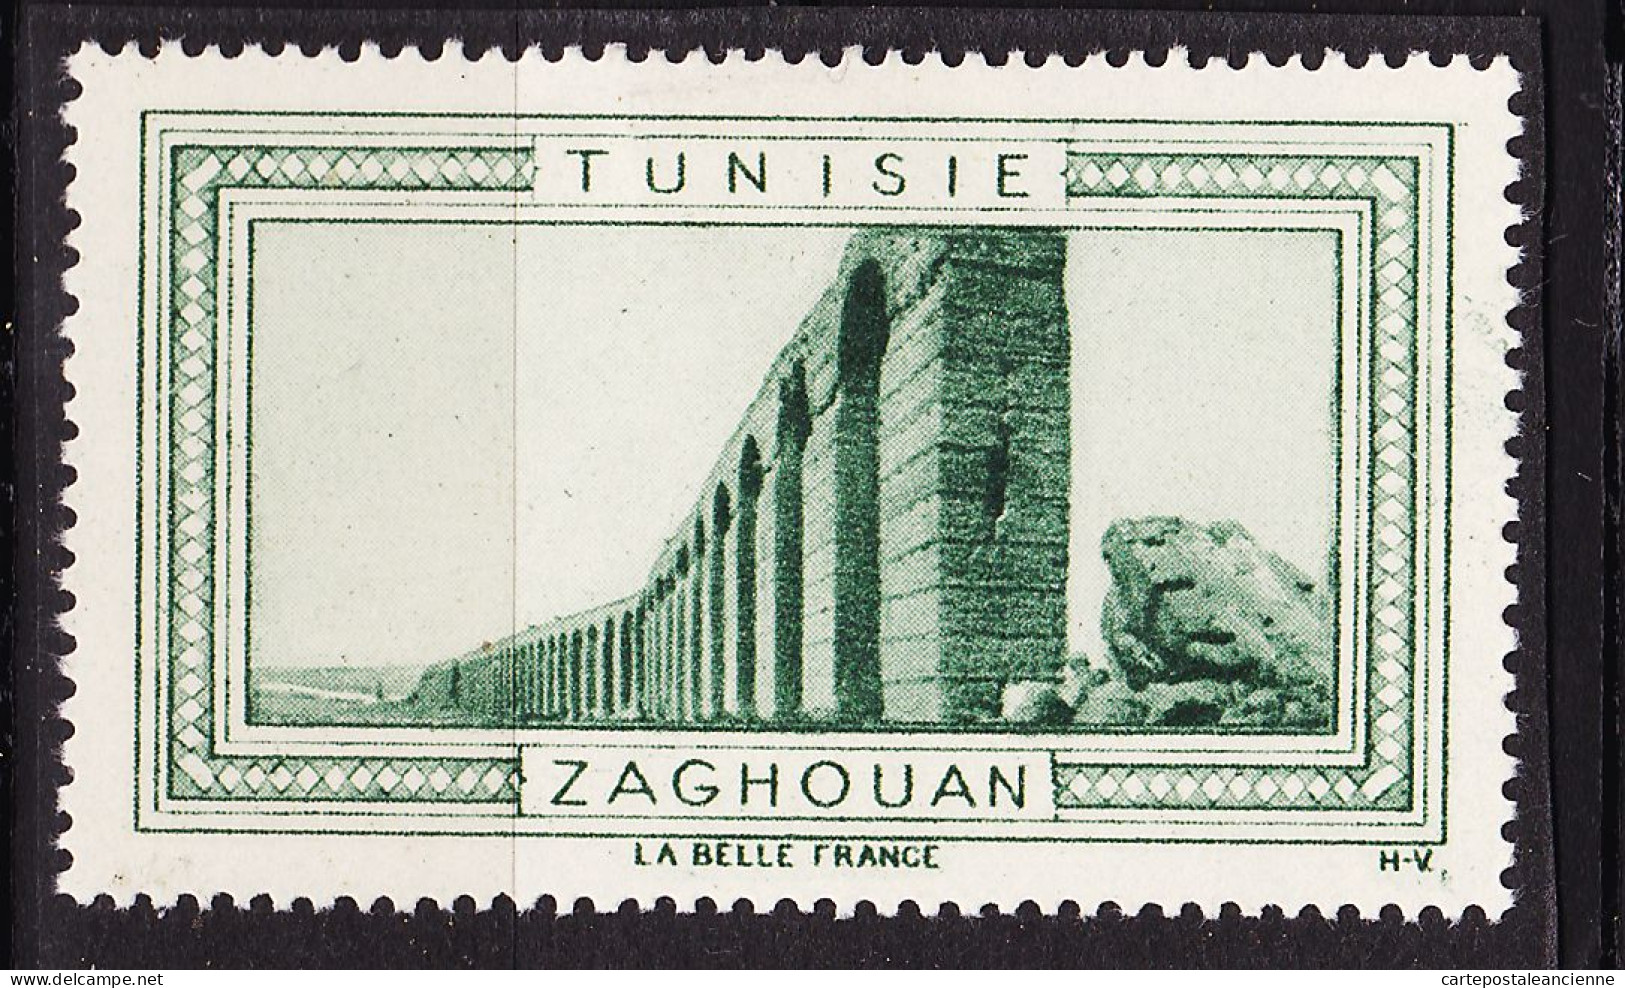 13011 ● ZAGHOUAN TUNISIE Vignette De Collection LA BELLE FRANCE 1925s H-V Helio VAUGIRARD PARIS Erinnophilie - Tourisme (Vignettes)